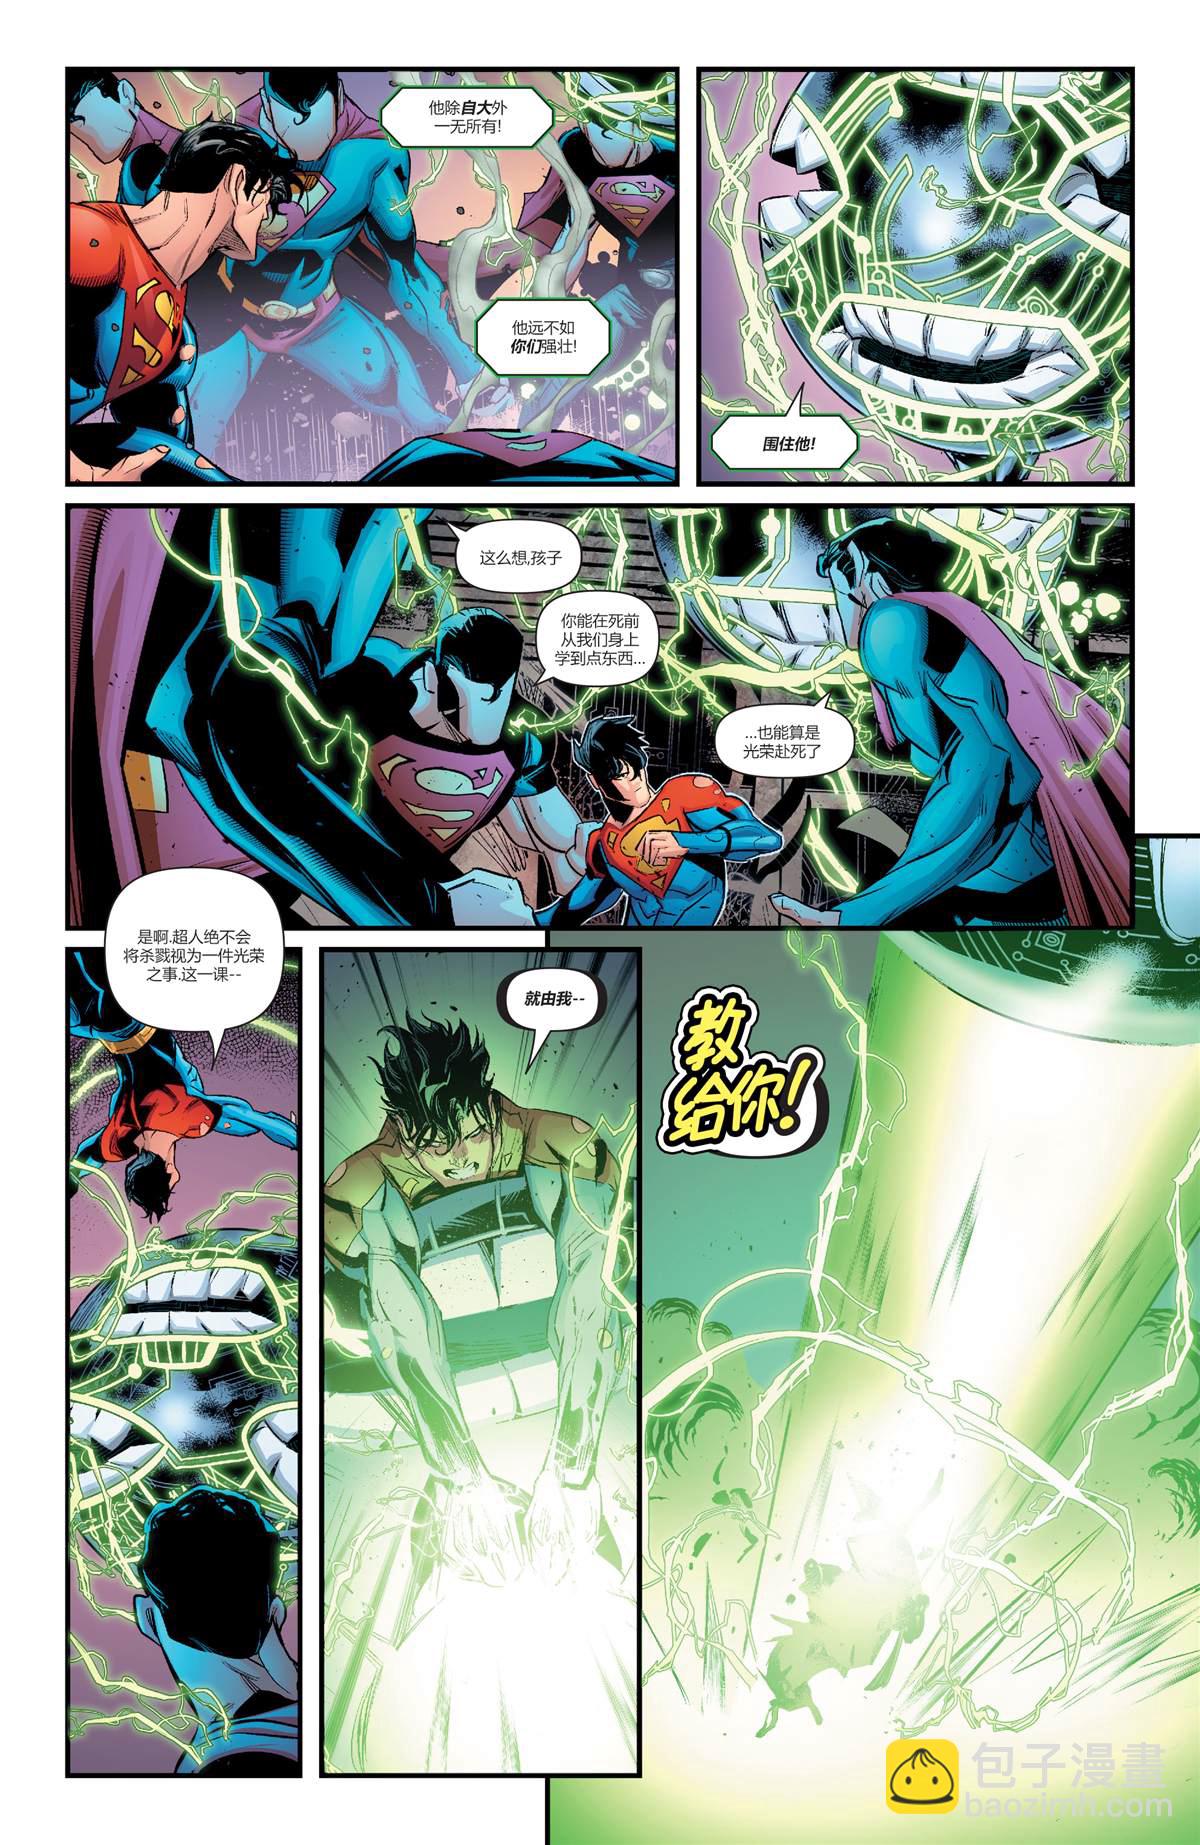 DC未來態 - 大都會超人#2 - 7